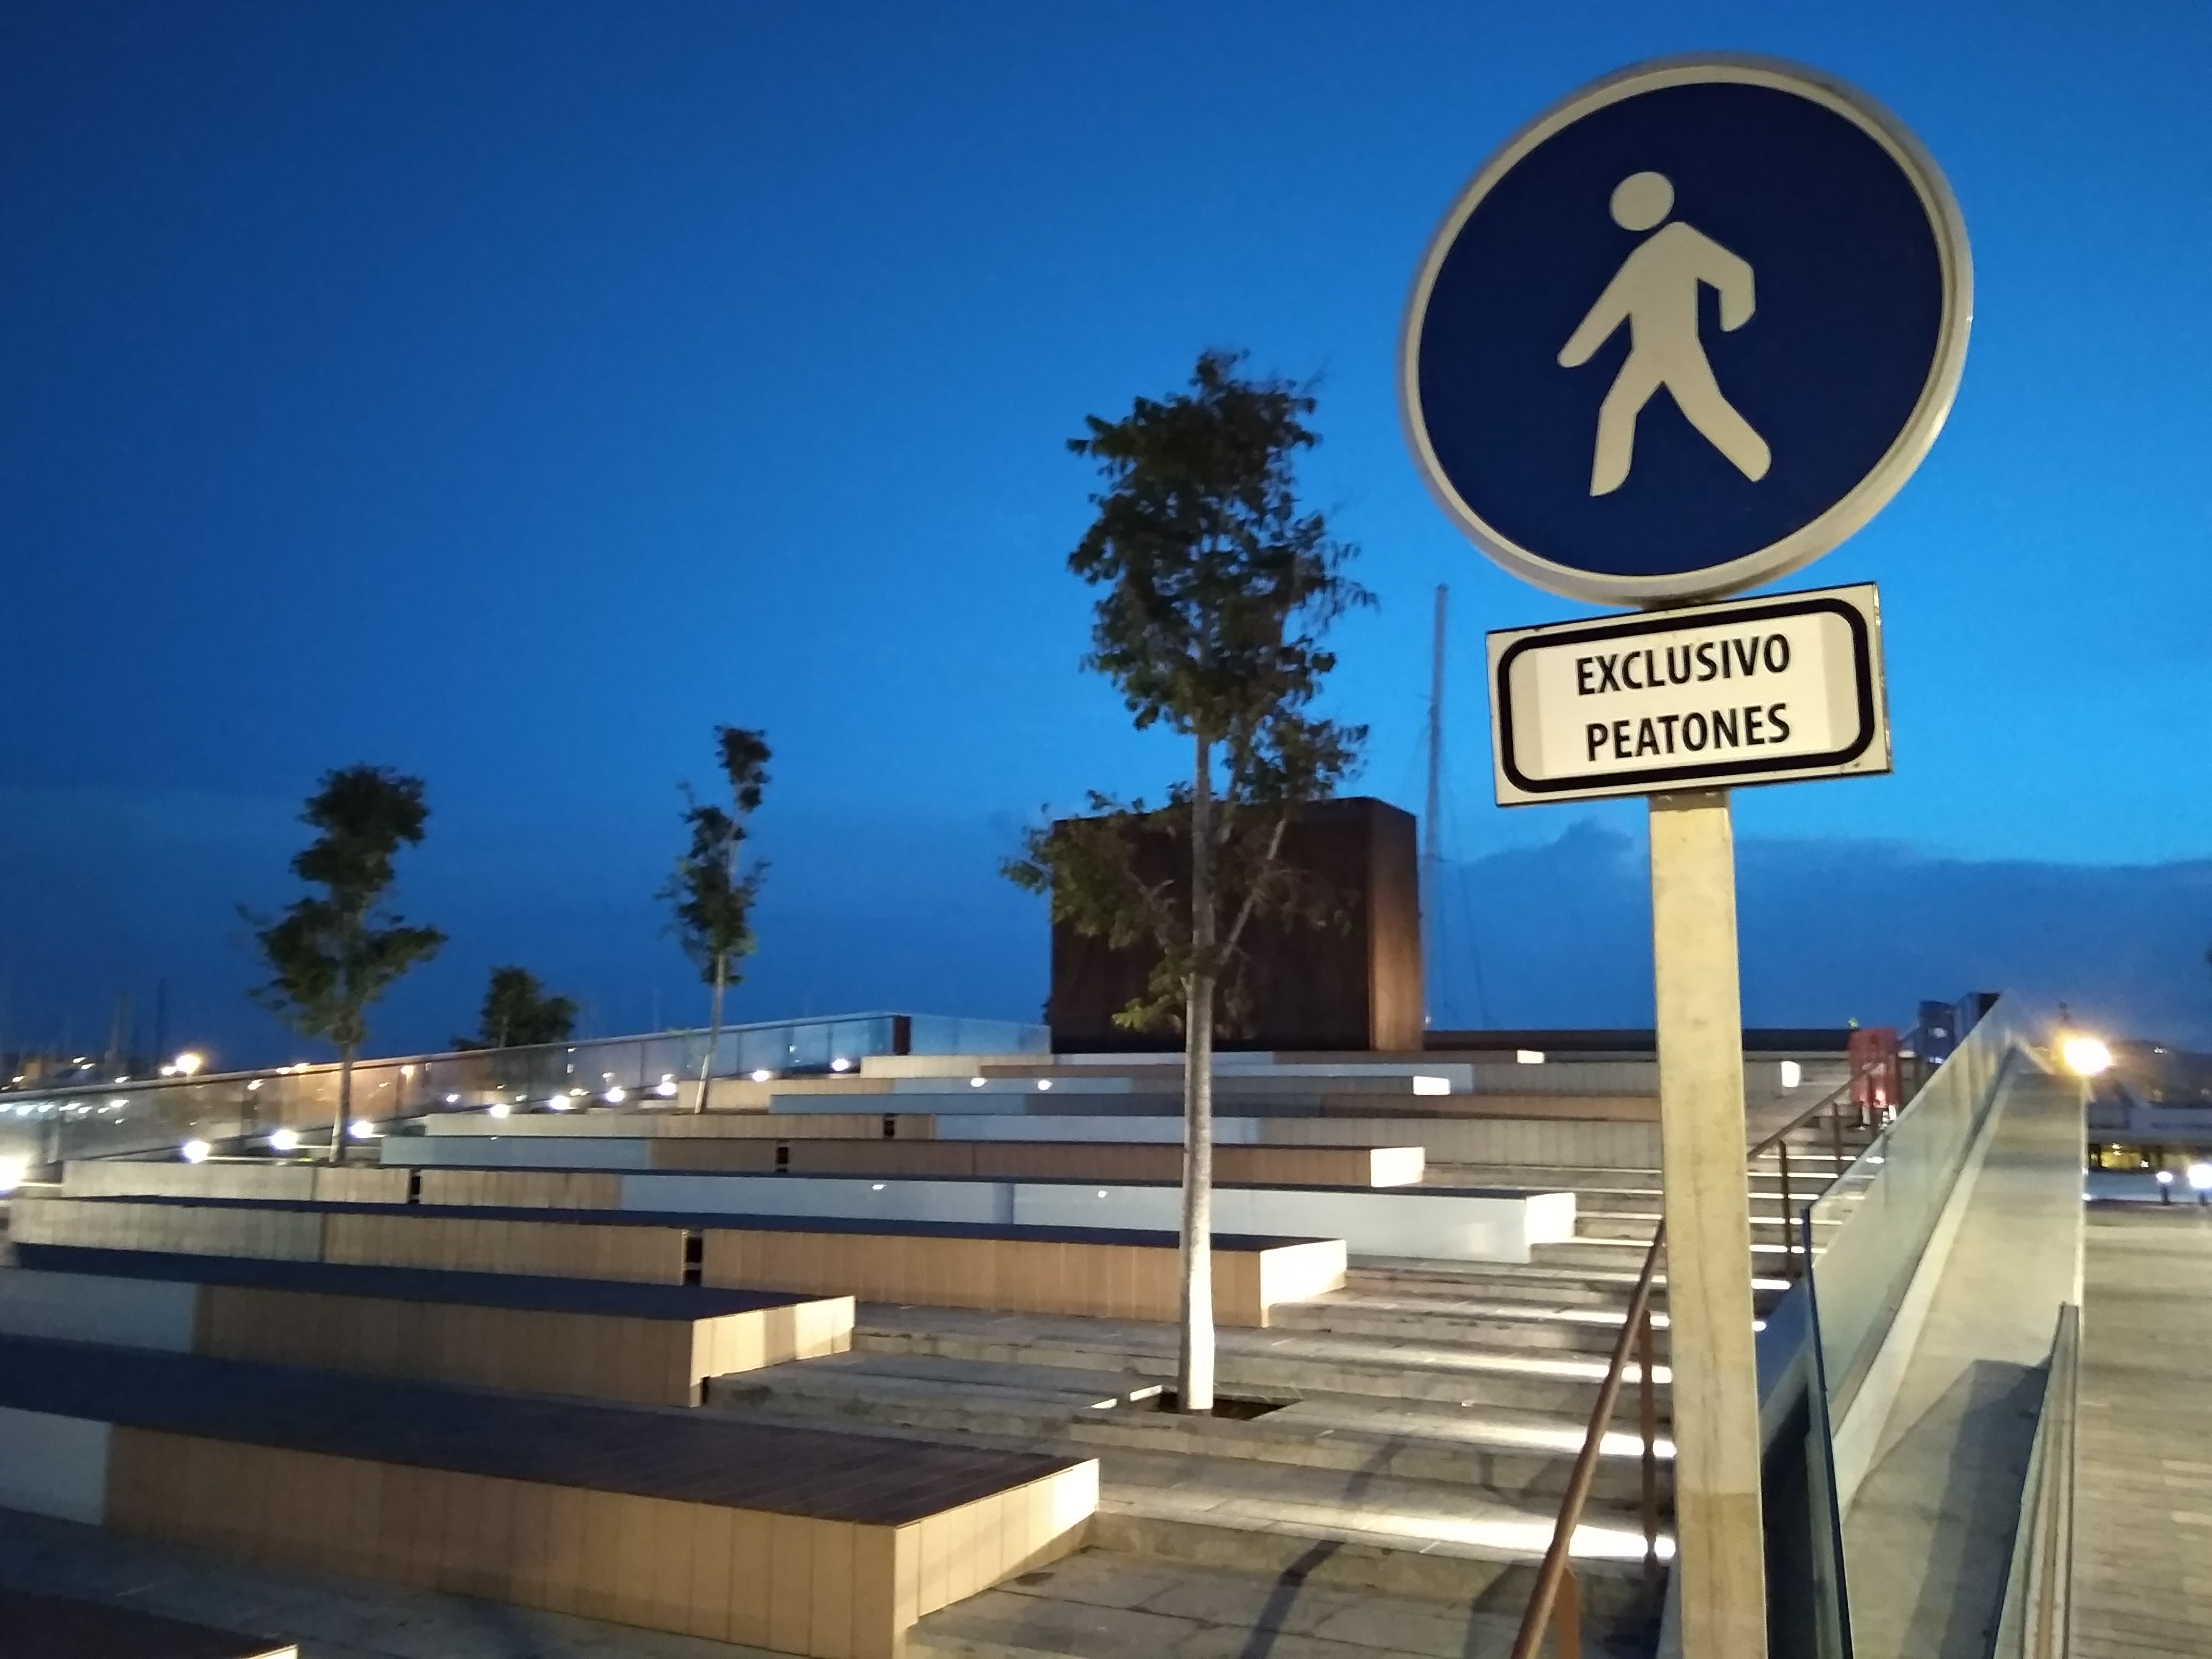 Der Platz des Martell, im Hafen von Ibiza, ist ab sofort nur für Fußgänger zugänglich